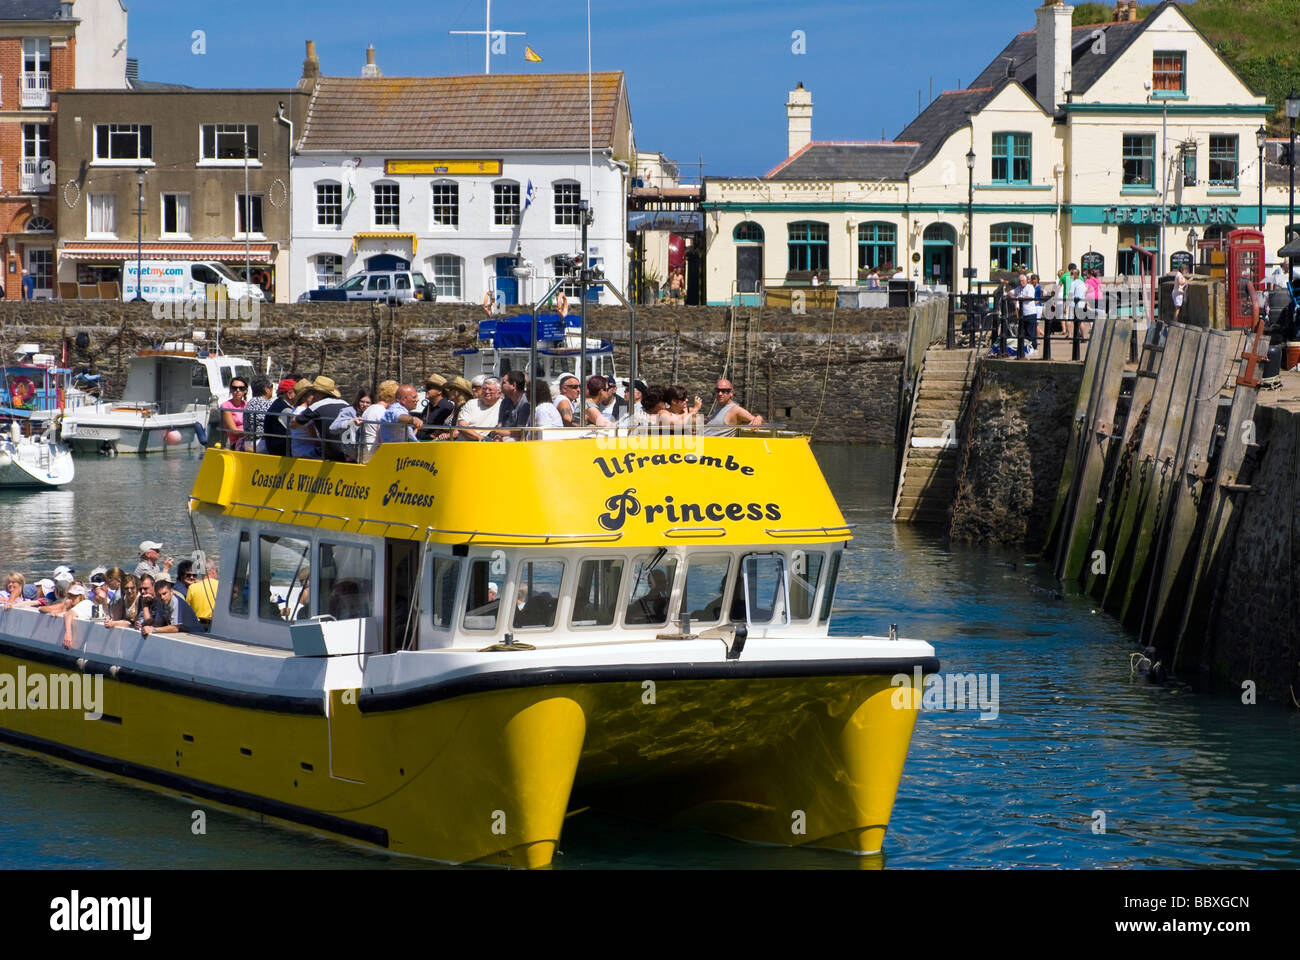 Ilfracombe Princess catamaran boat offering coastal & wildlife cruises. Cruise boat with people, Ilfracombe harbour, Devon, UK. Stock Photo